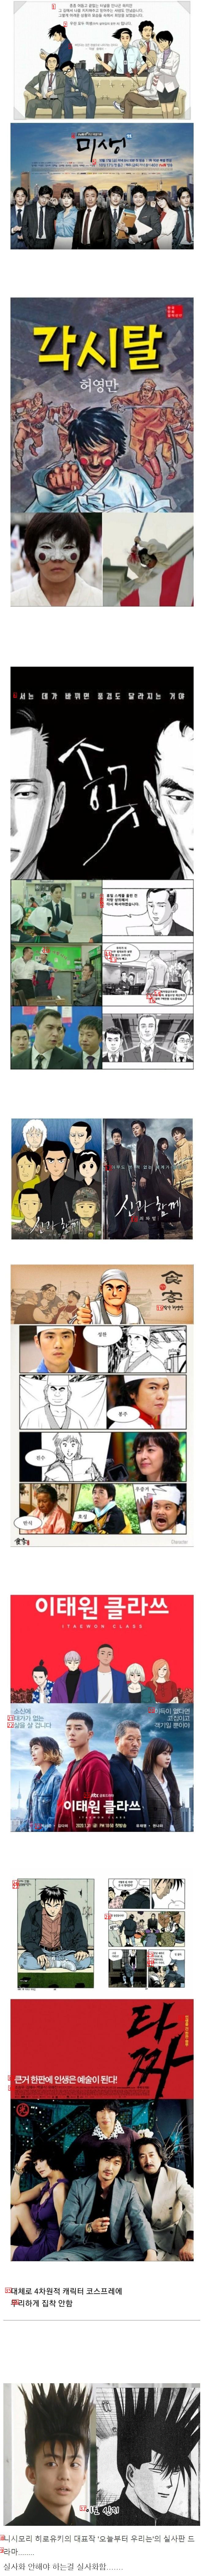 韓国漫画の実写化が成功した理由